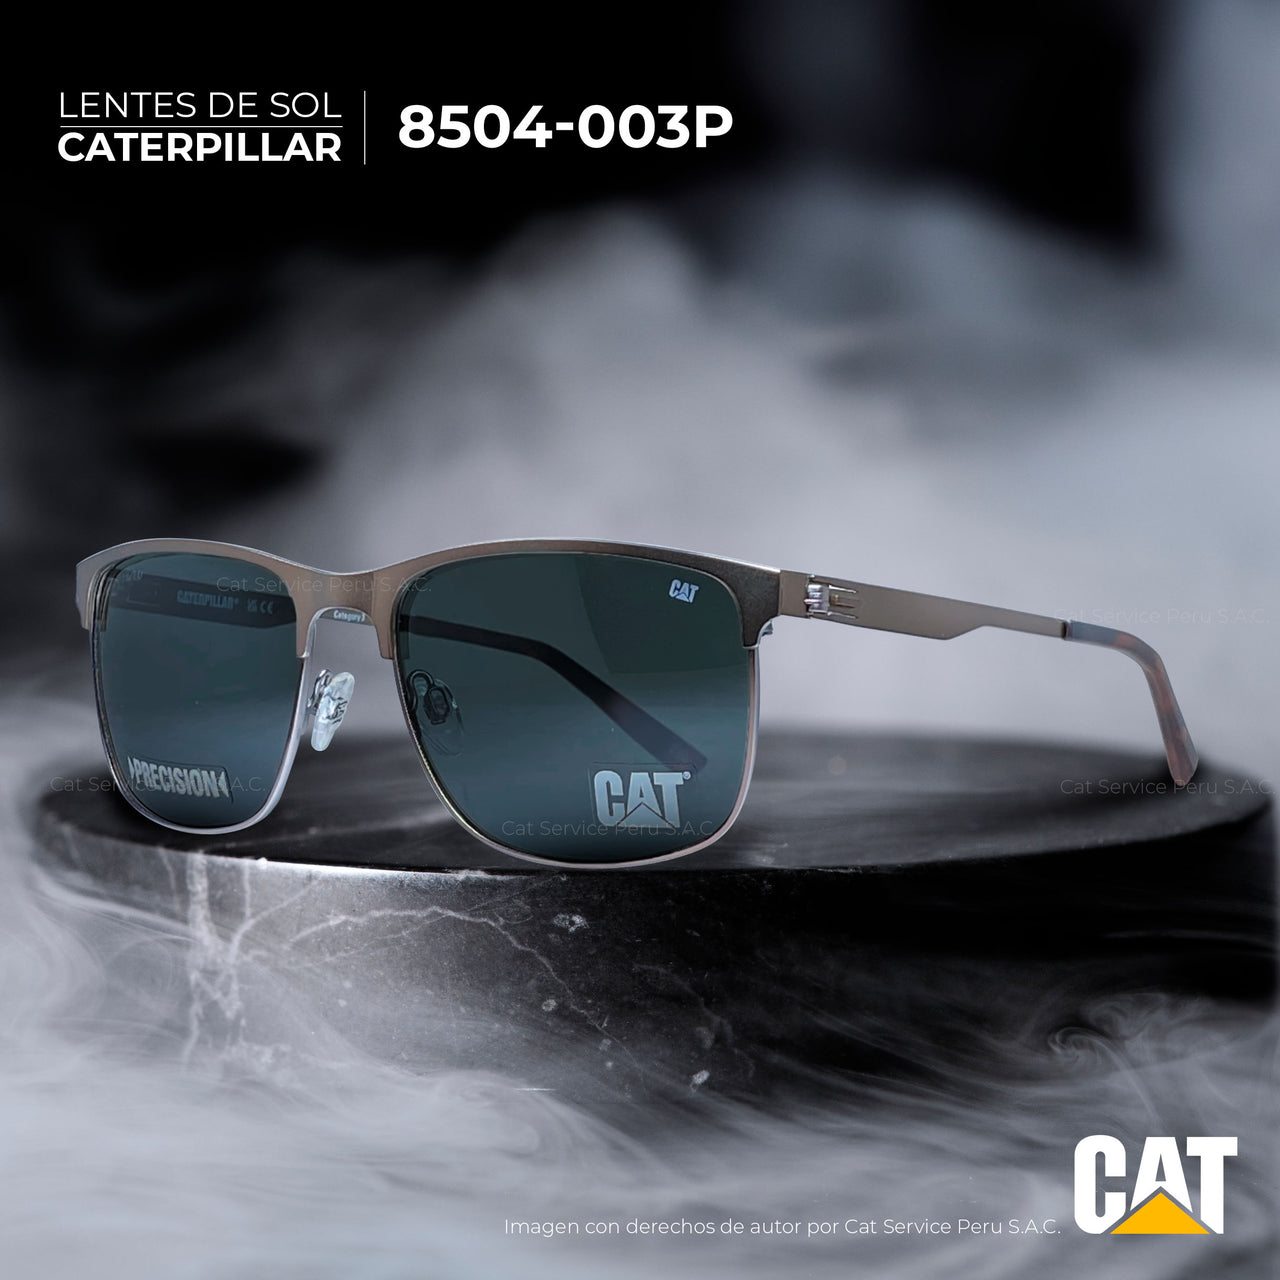 कैट सीपीएस-8504-003पी पोलराइज्ड ब्लैक मून्स धूप का चश्मा 